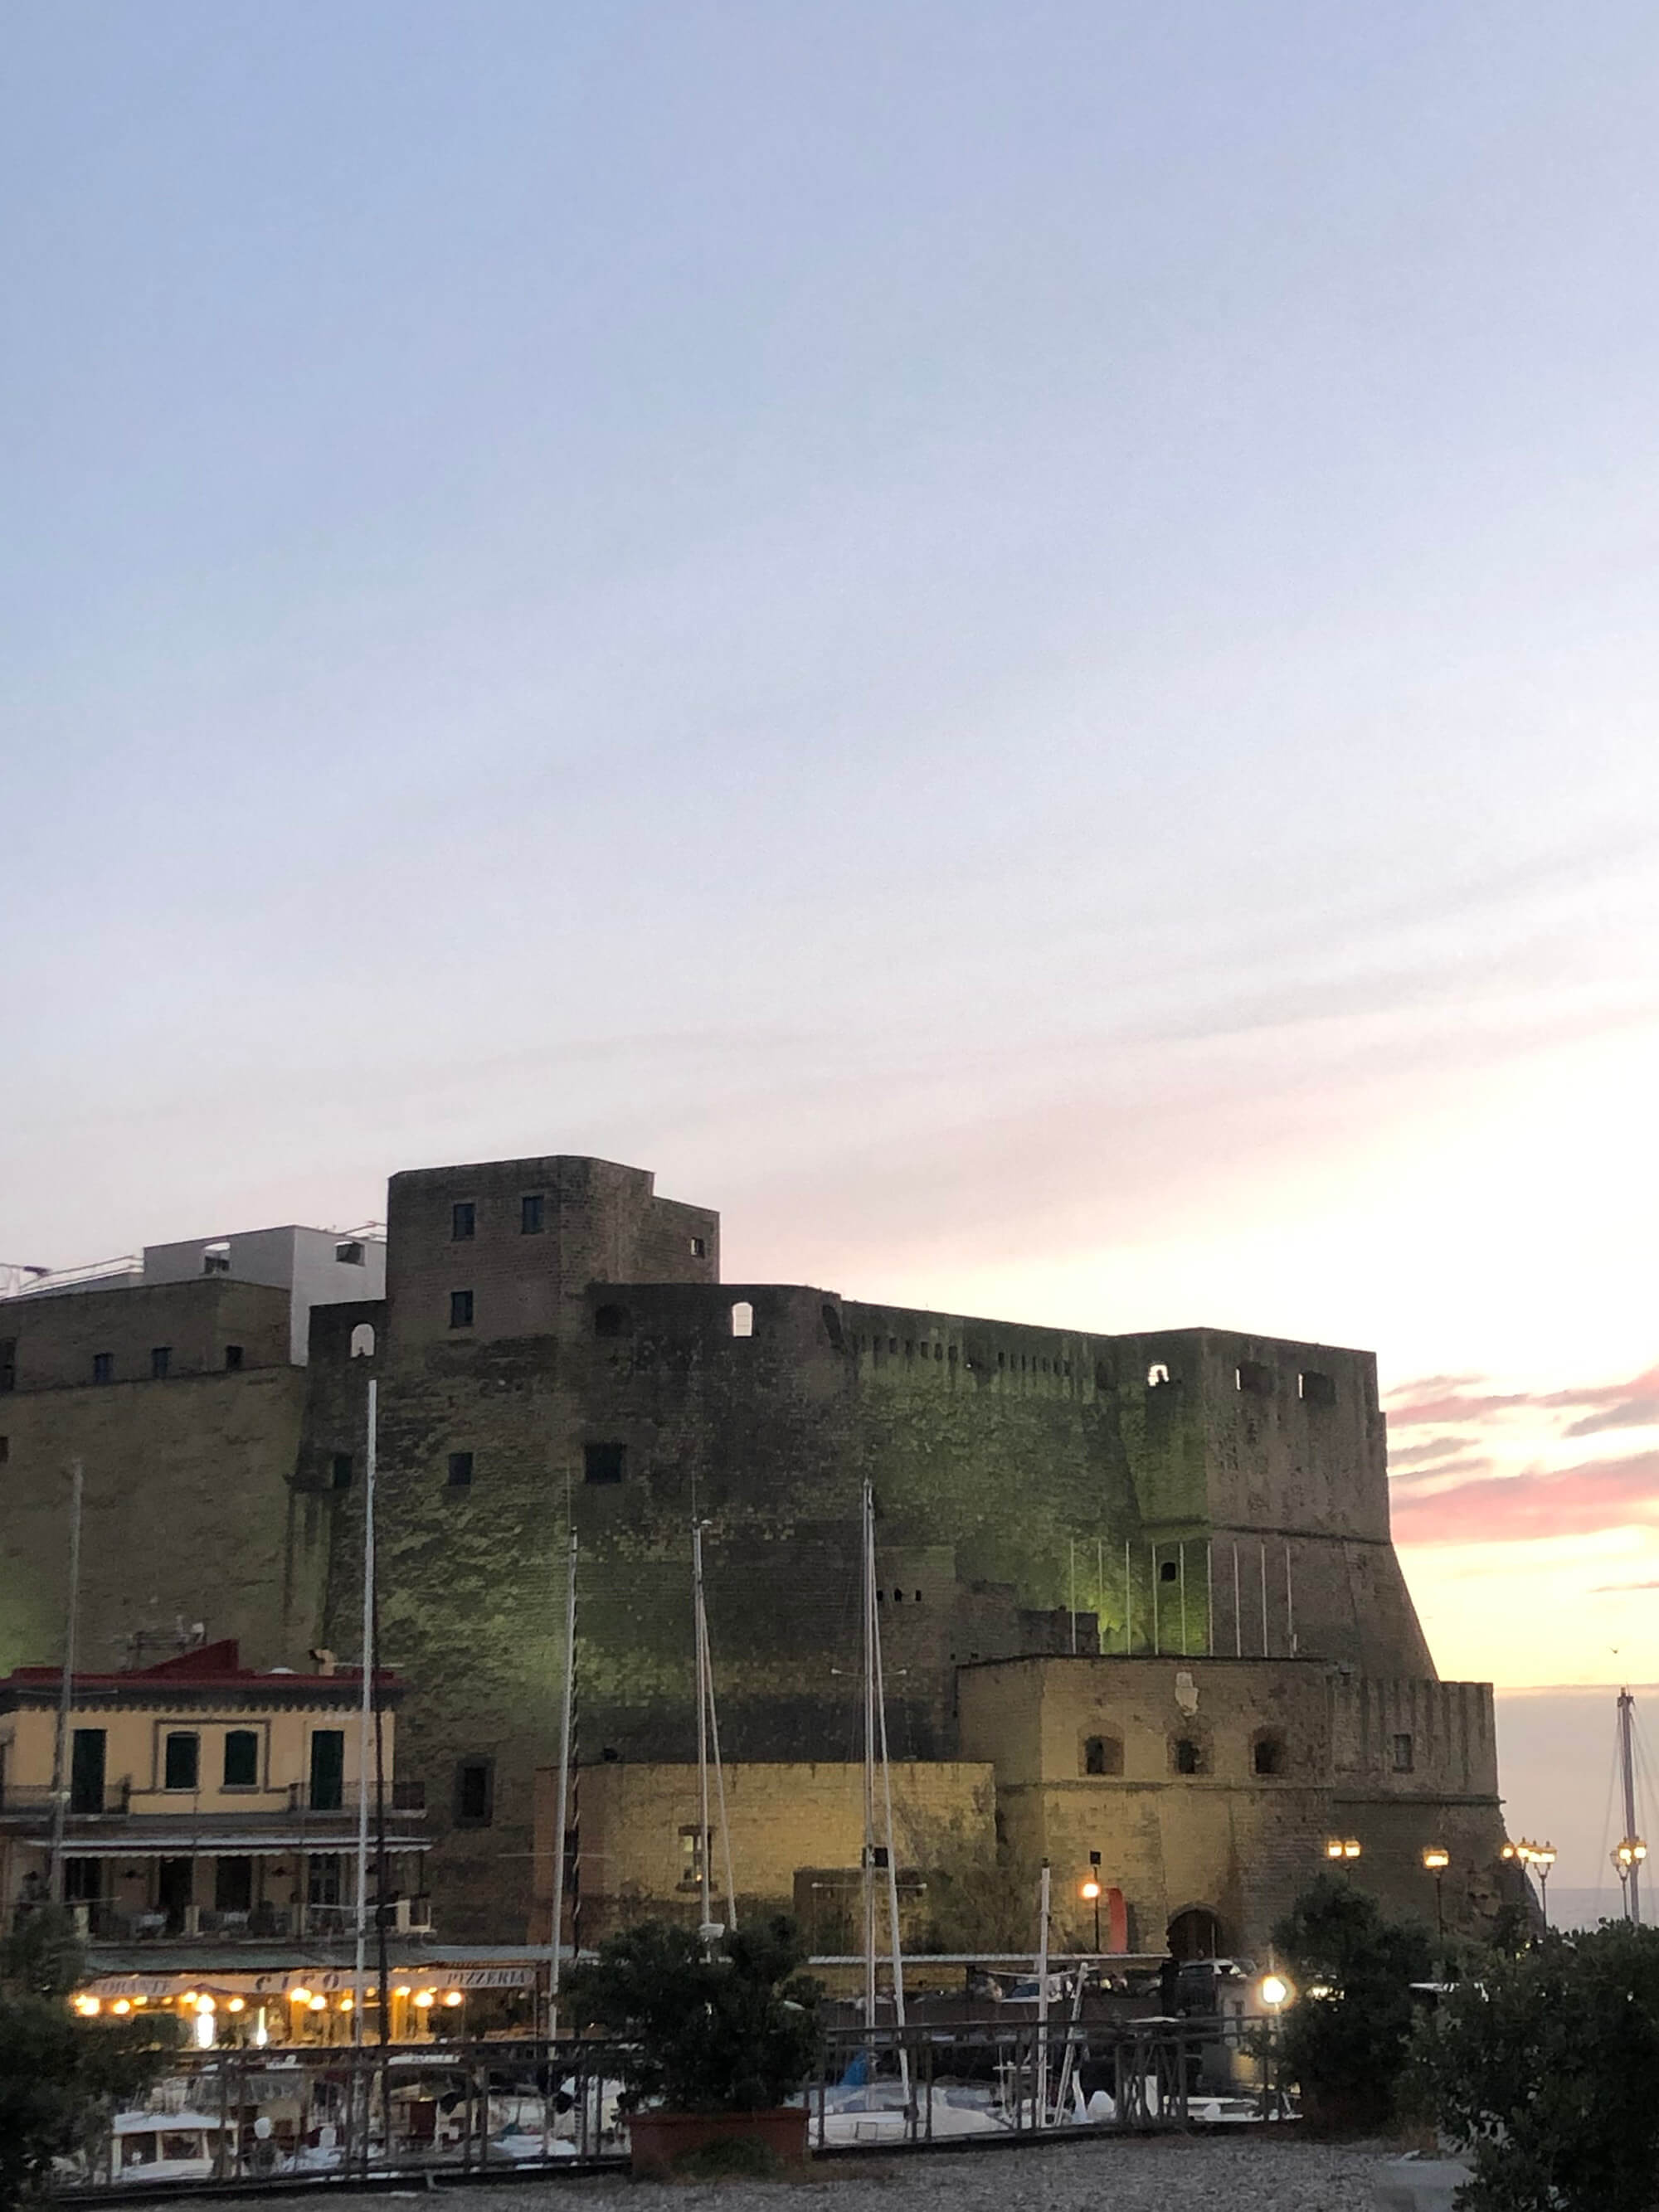 Fortezza a Napoli | Fortress in Naples